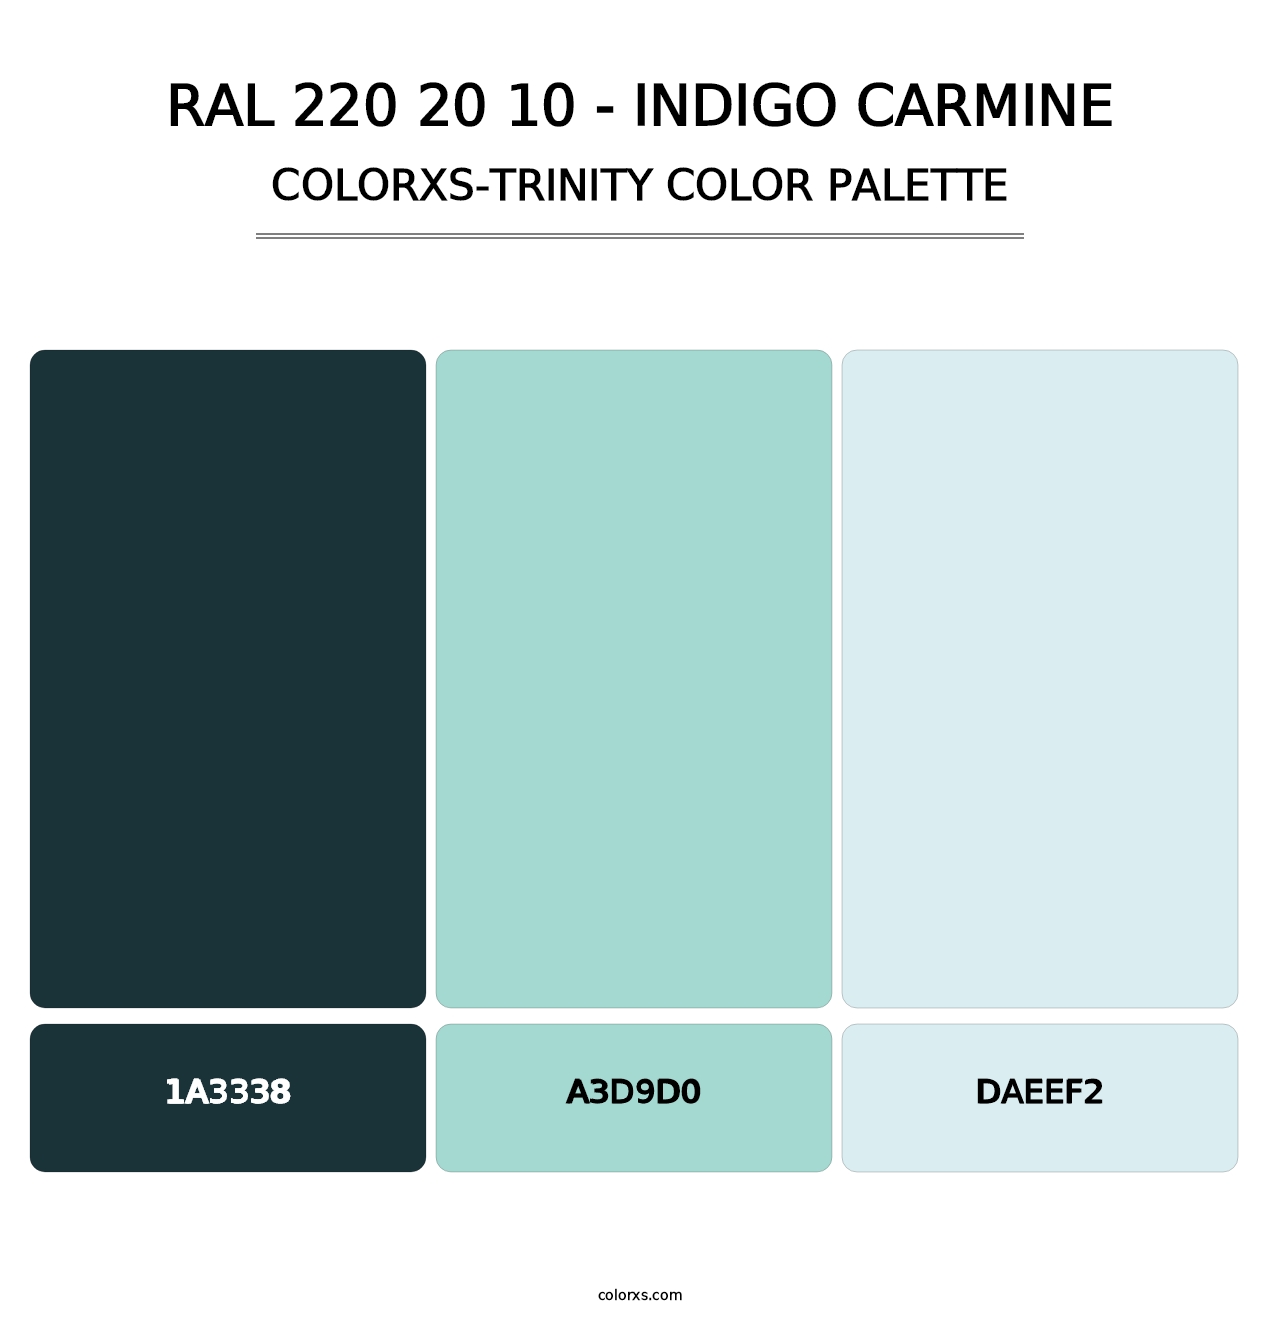 RAL 220 20 10 - Indigo Carmine - Colorxs Trinity Palette